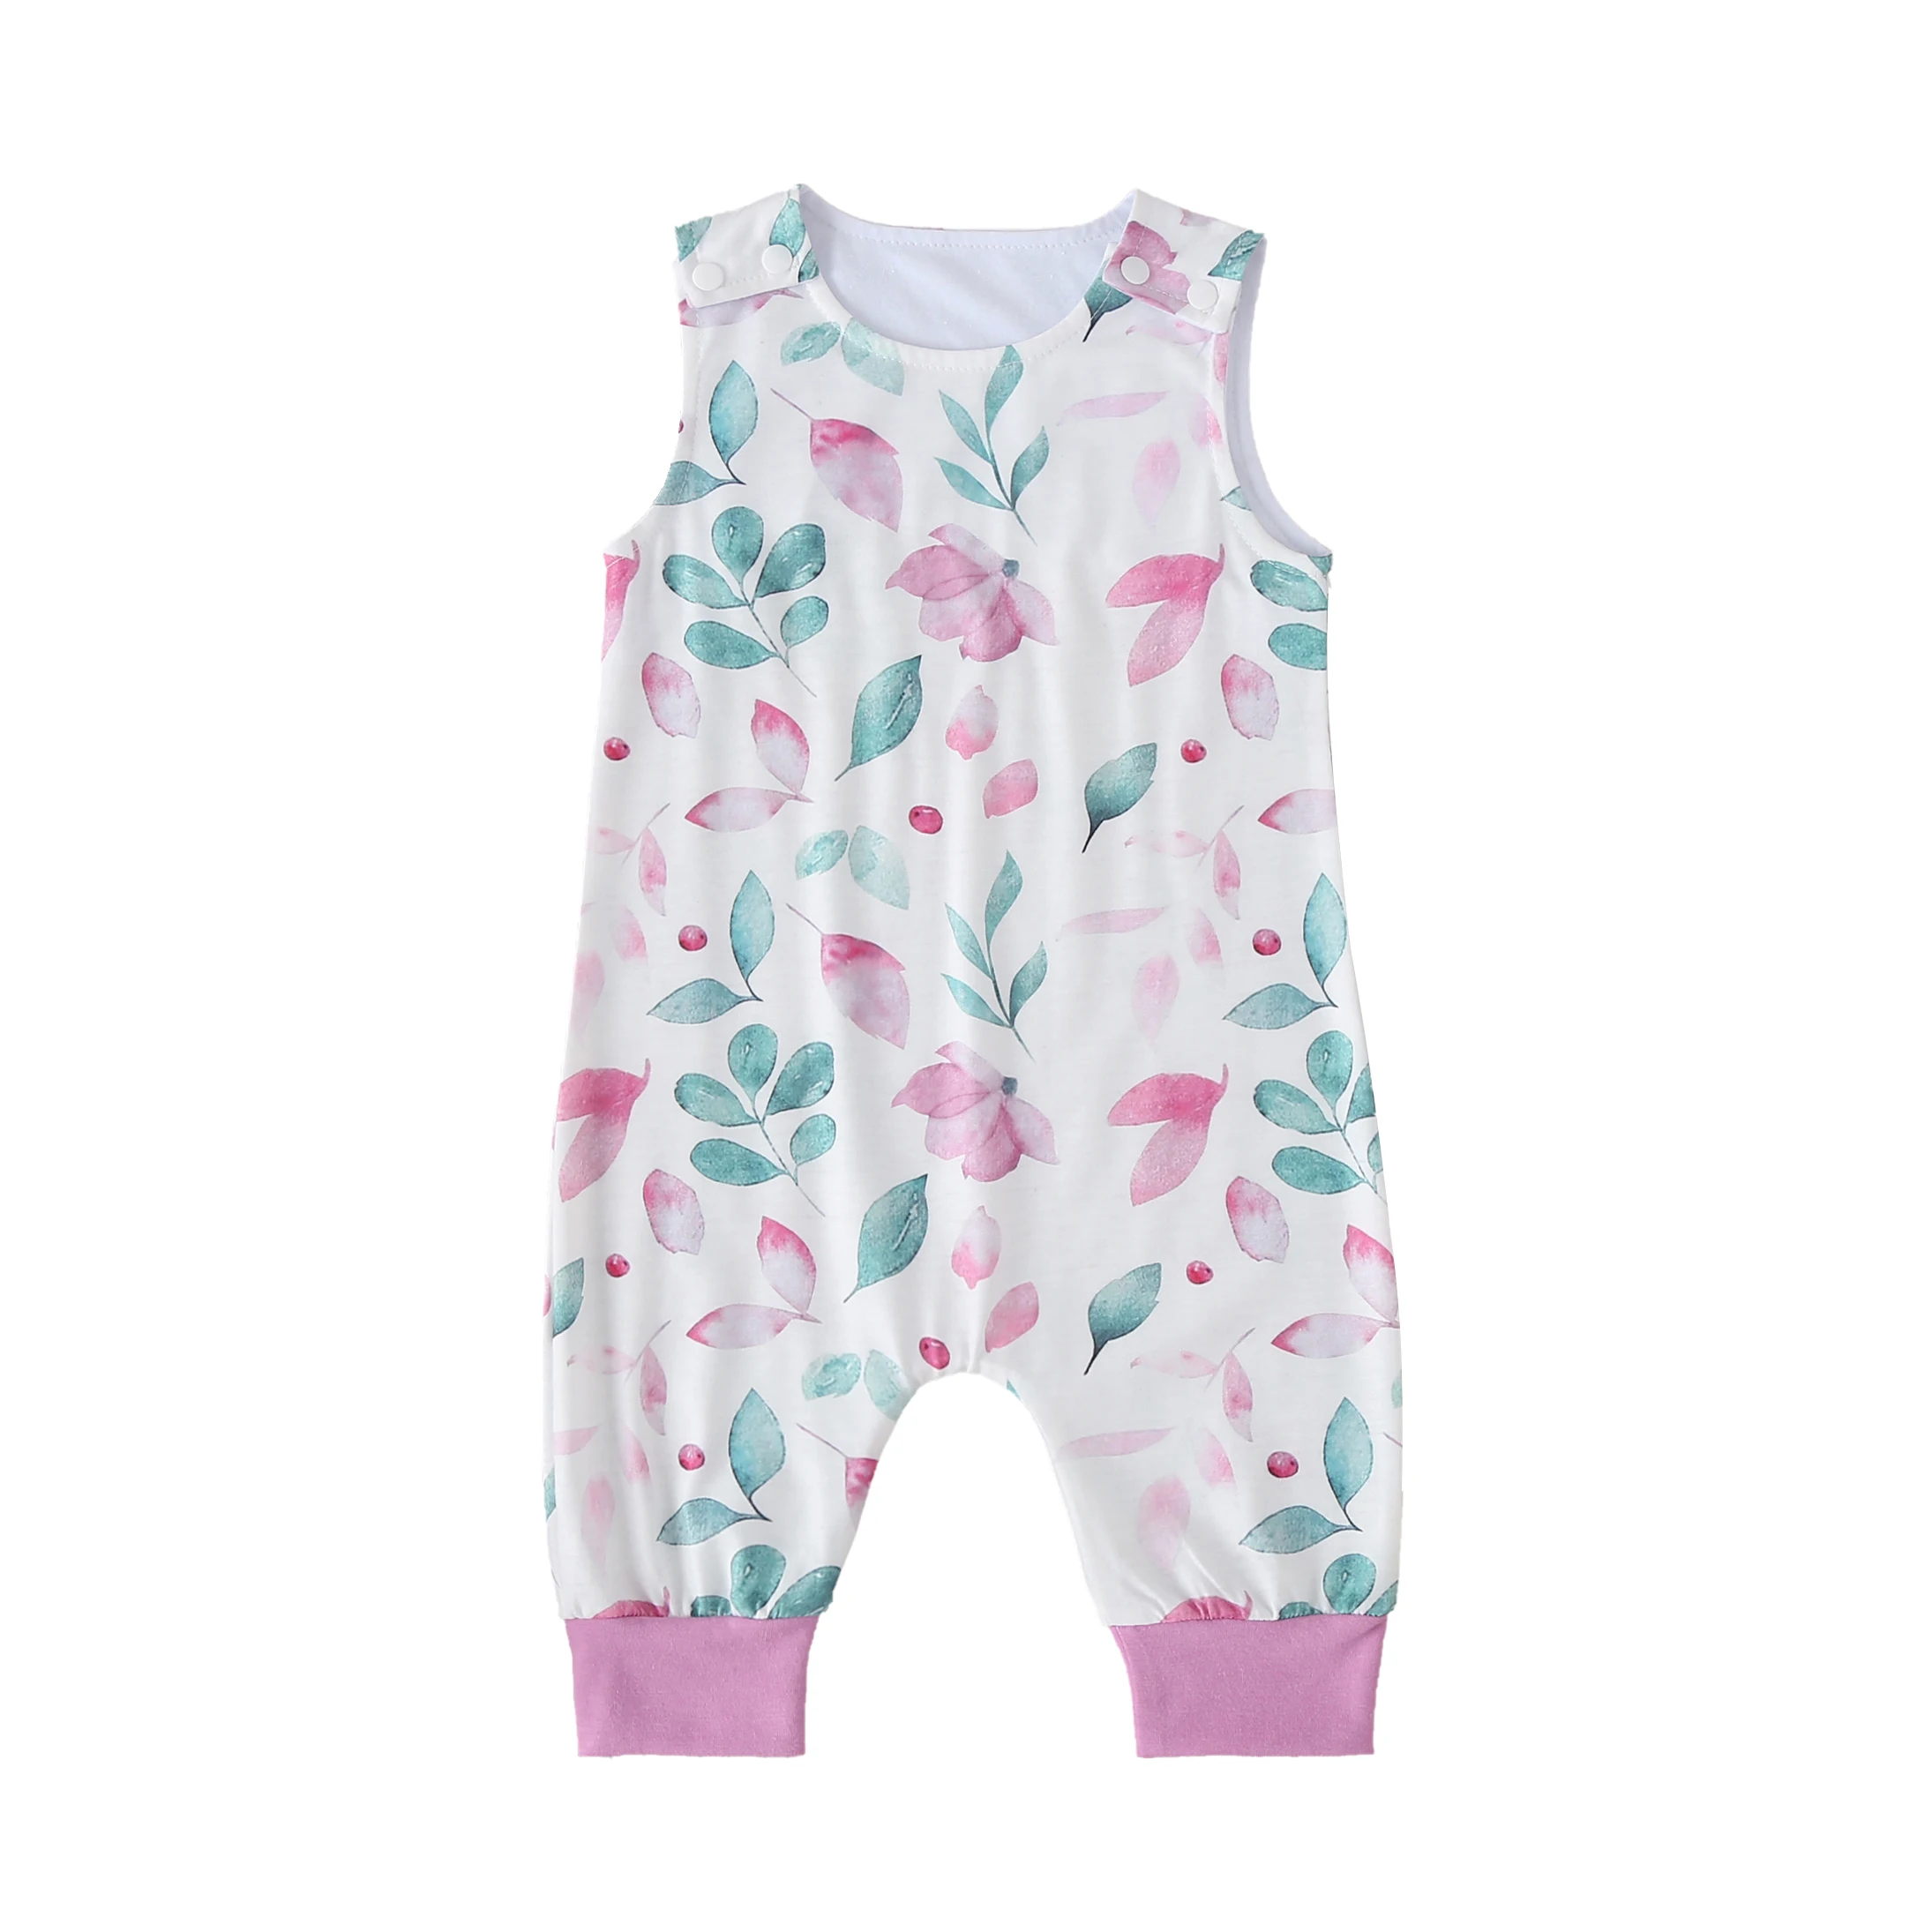 

Комбинезон хлопковый для девочек 0-18 месяцев, милая повседневная одежда для новорожденных, без рукавов, с принтом листьев, элегантный наряд